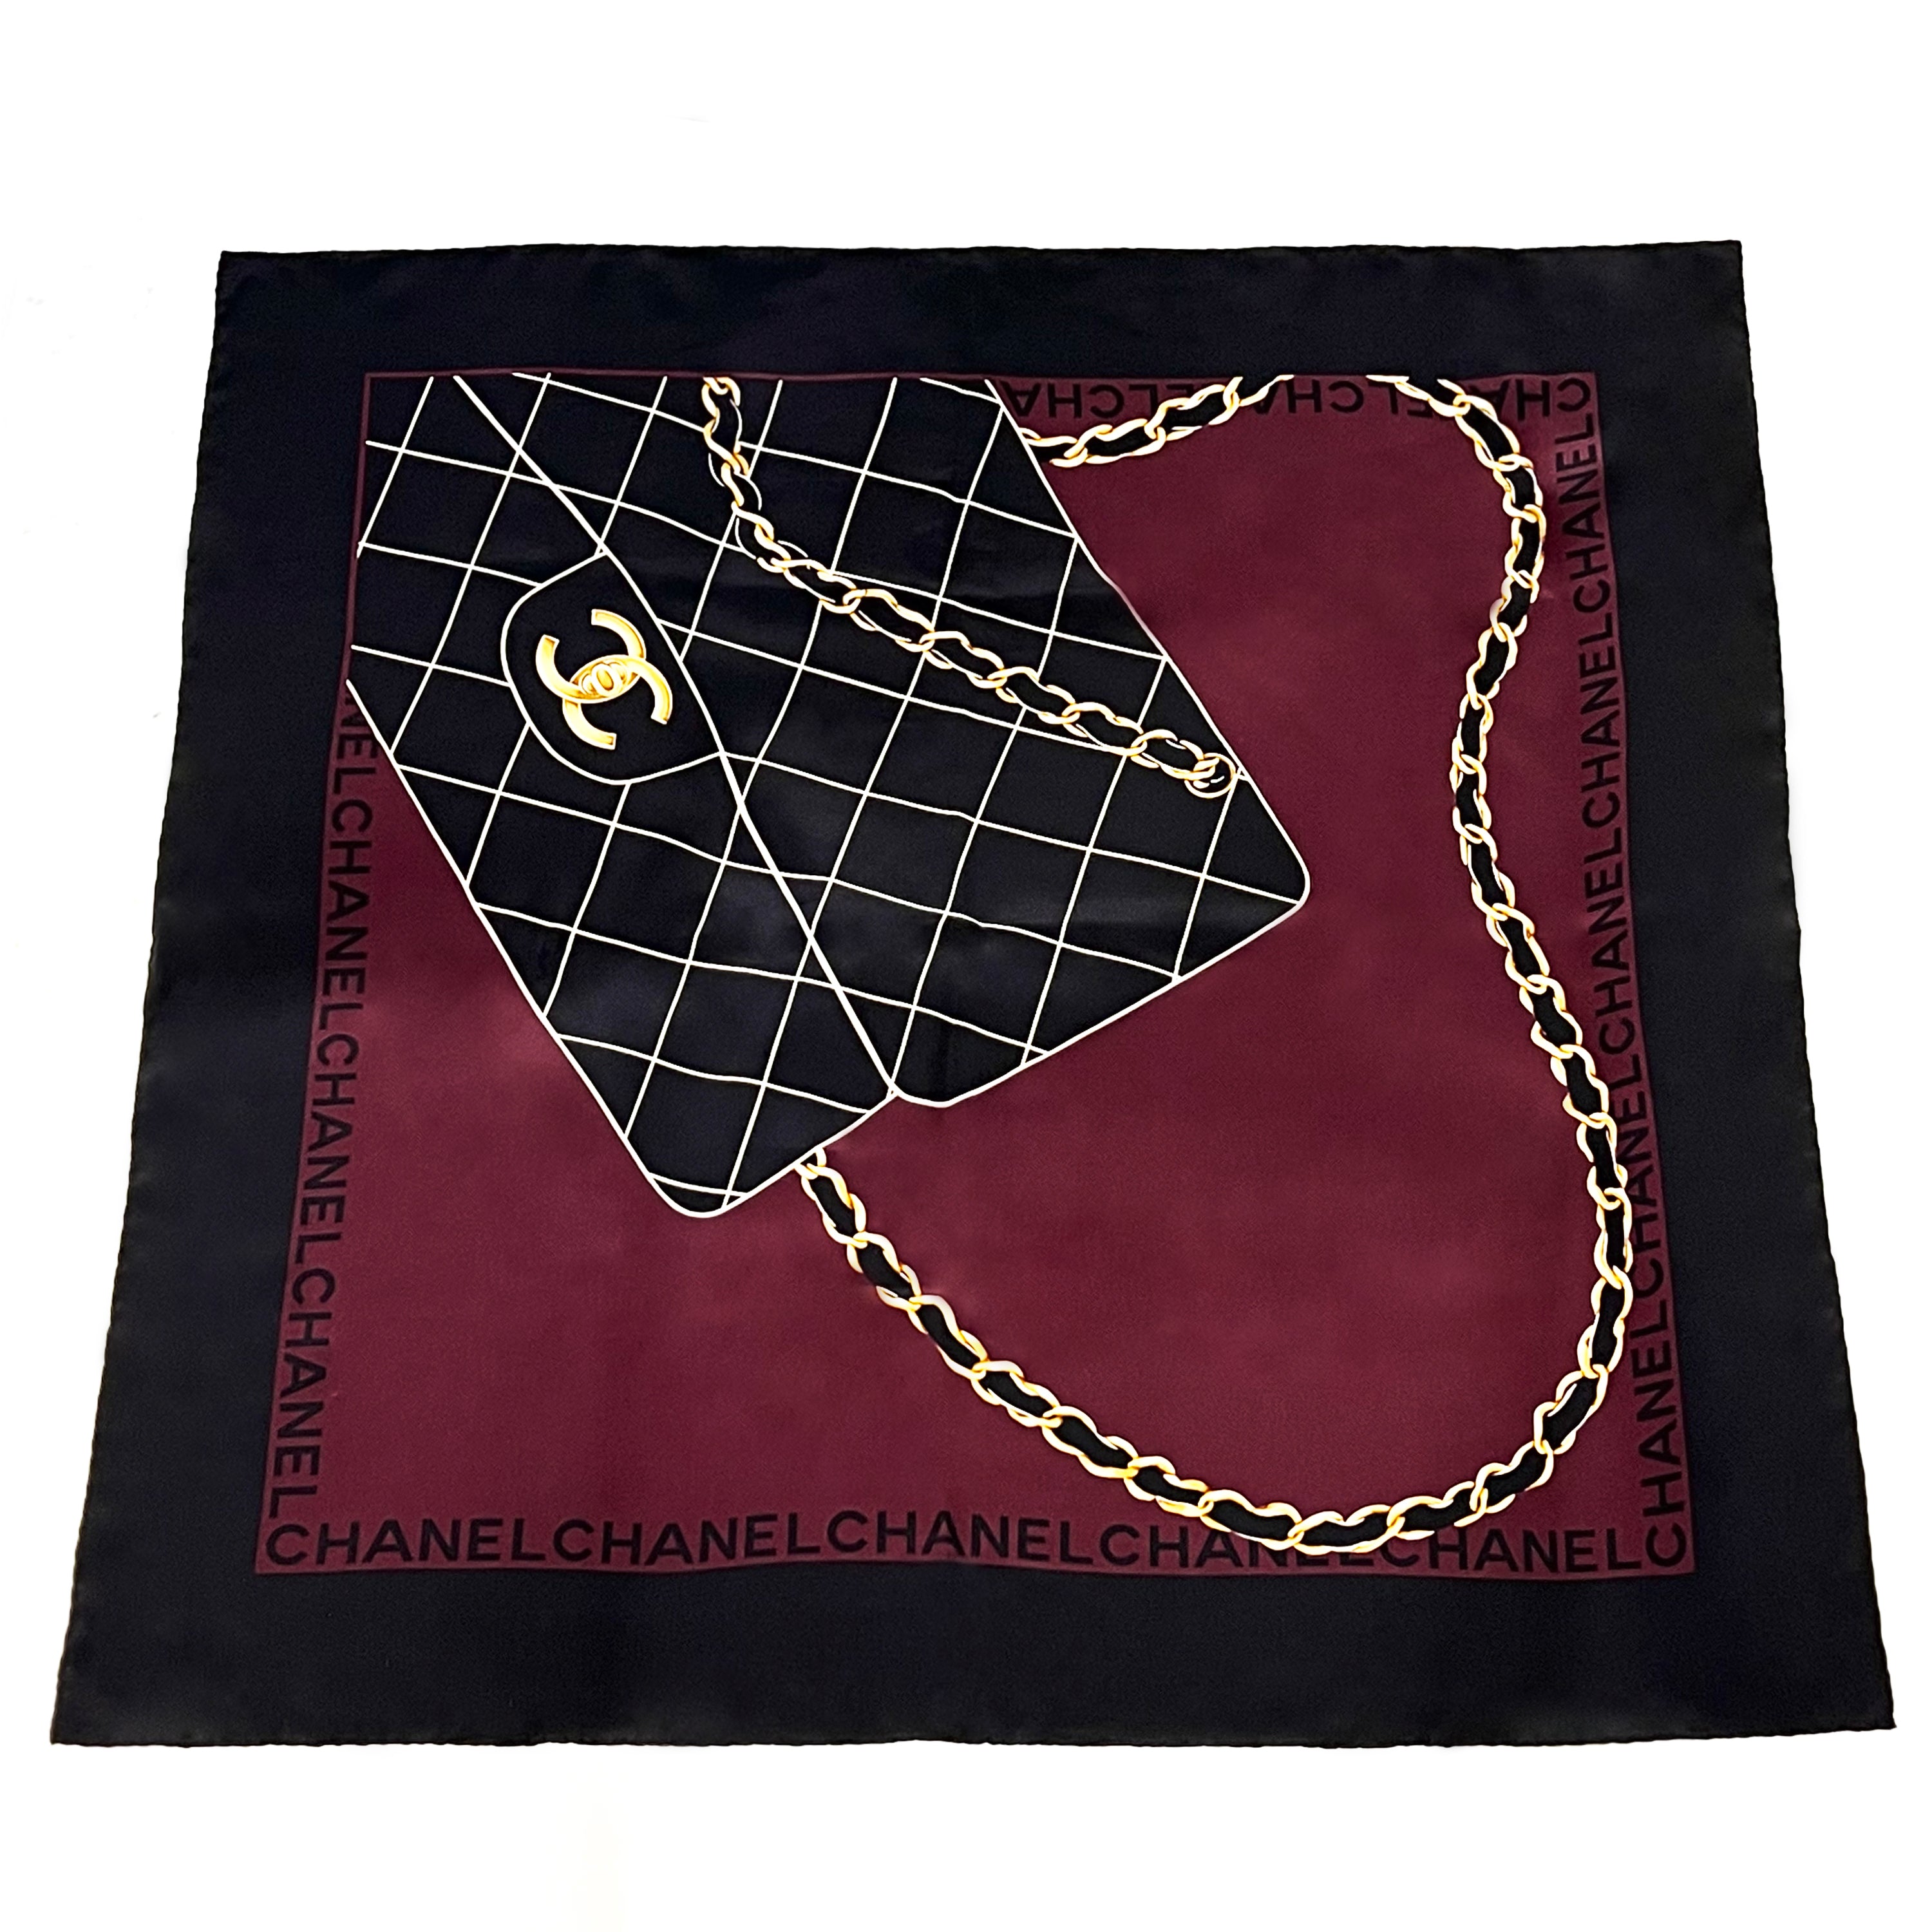 2019 Silk Handbag Print Scarf